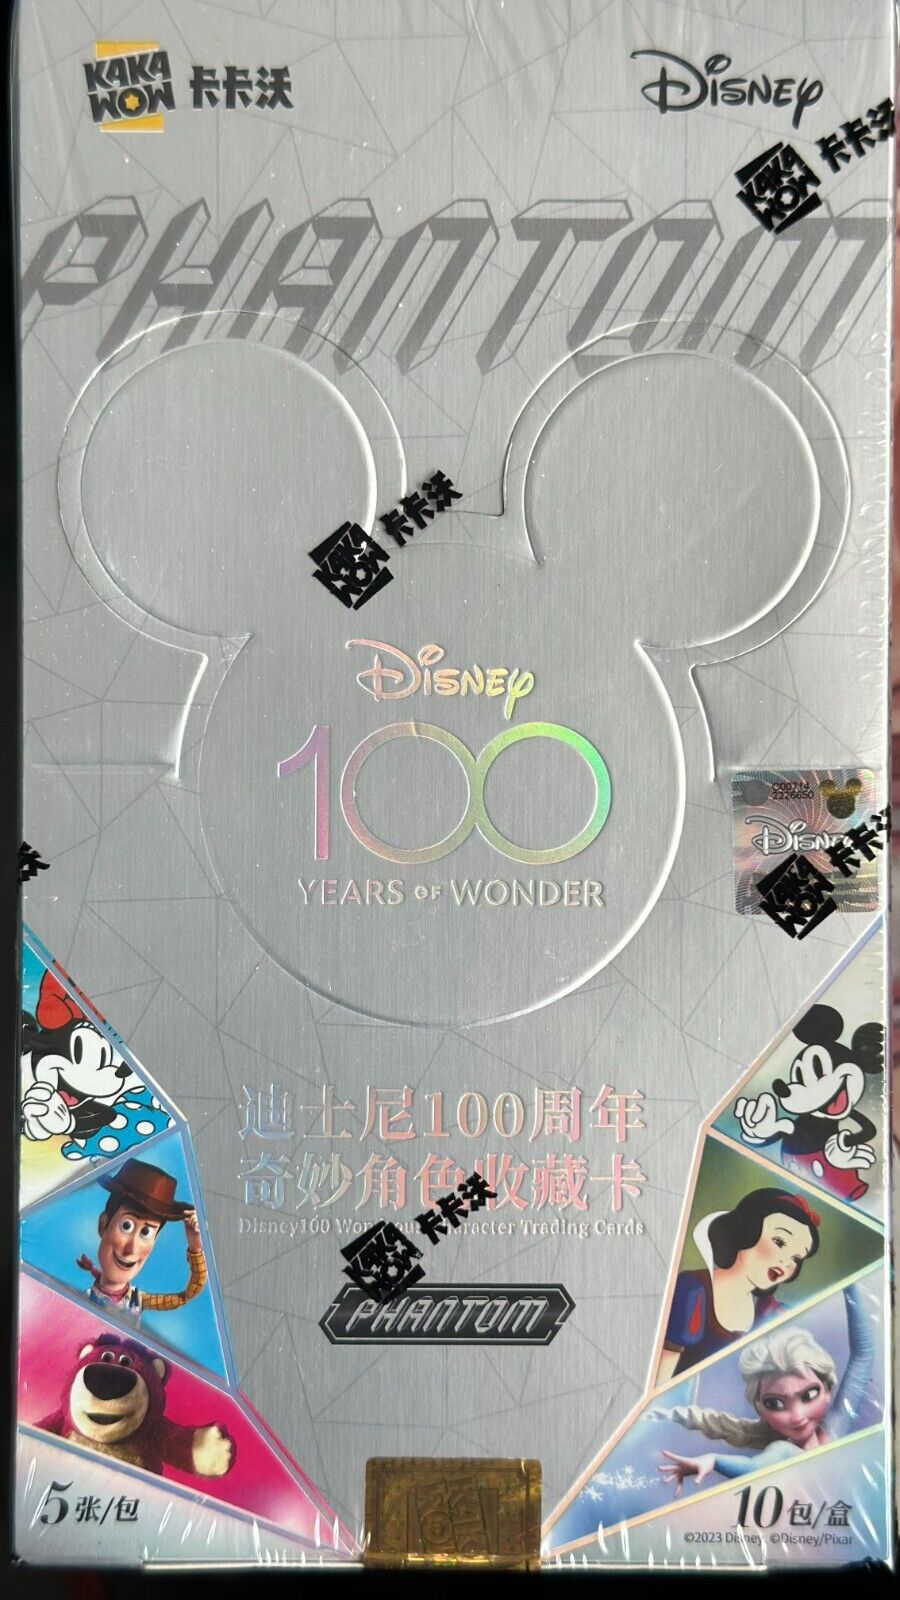 2023 Kakawow/Phantom Disney 100 Years of Wonder: Real or Fake?